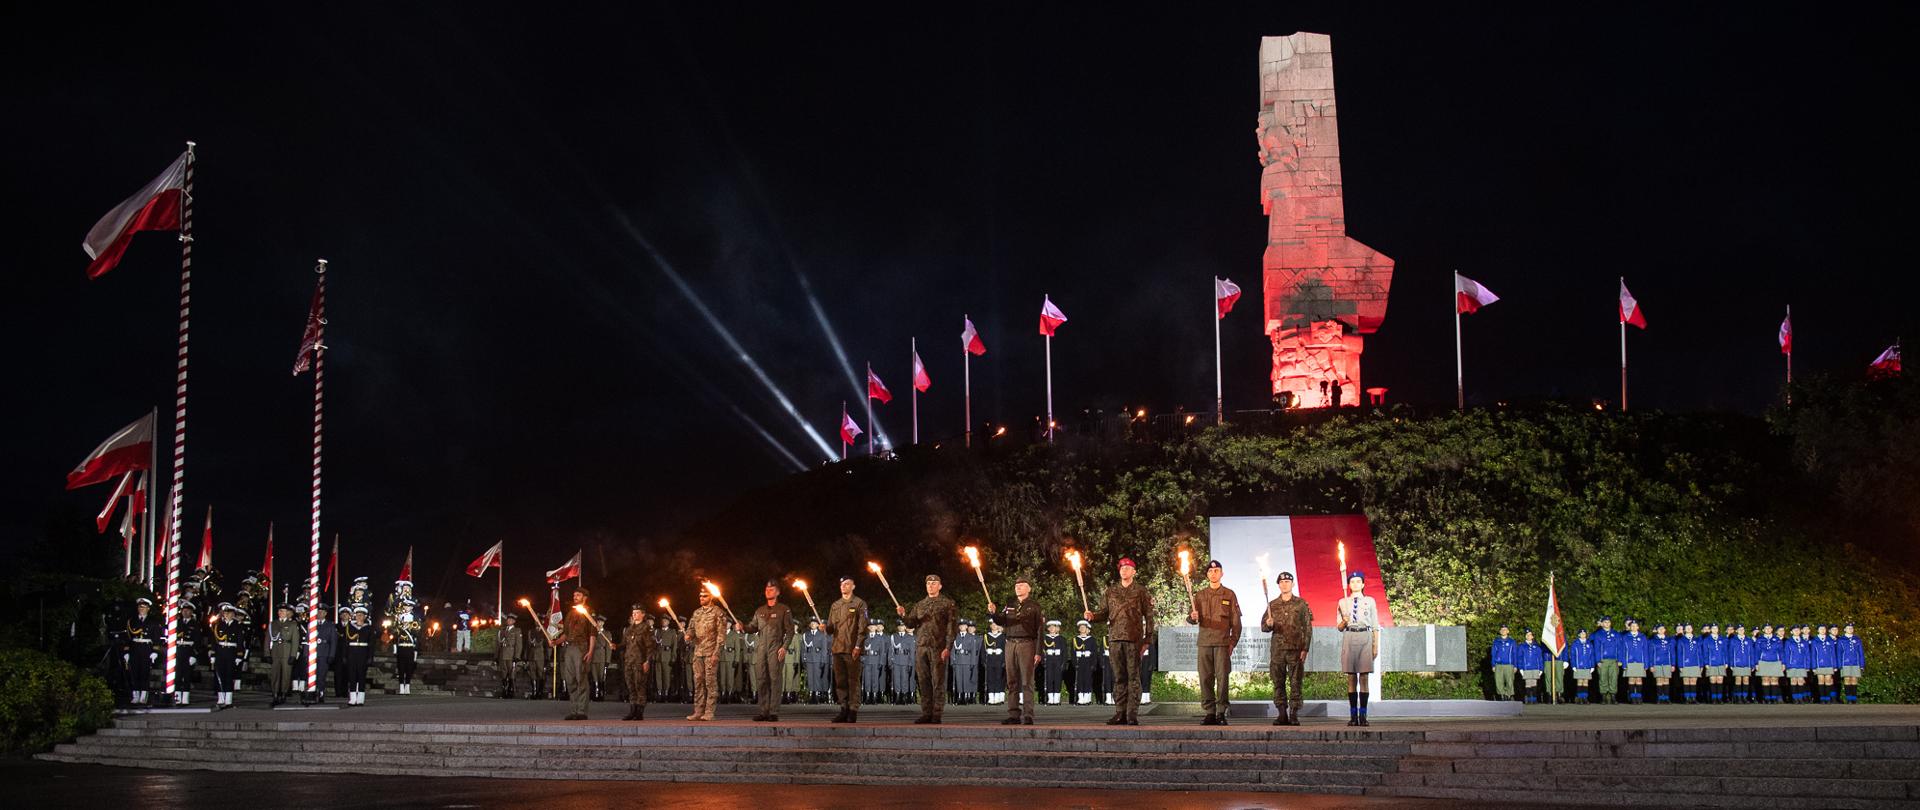 Grupa żołnierzy z pochodniami. W tle flaga biało-czerwona, podświetlony na czerwono pomnik Bohaterów Westerplatte, Wokól pomnika białe-czerwone flagi na masztach